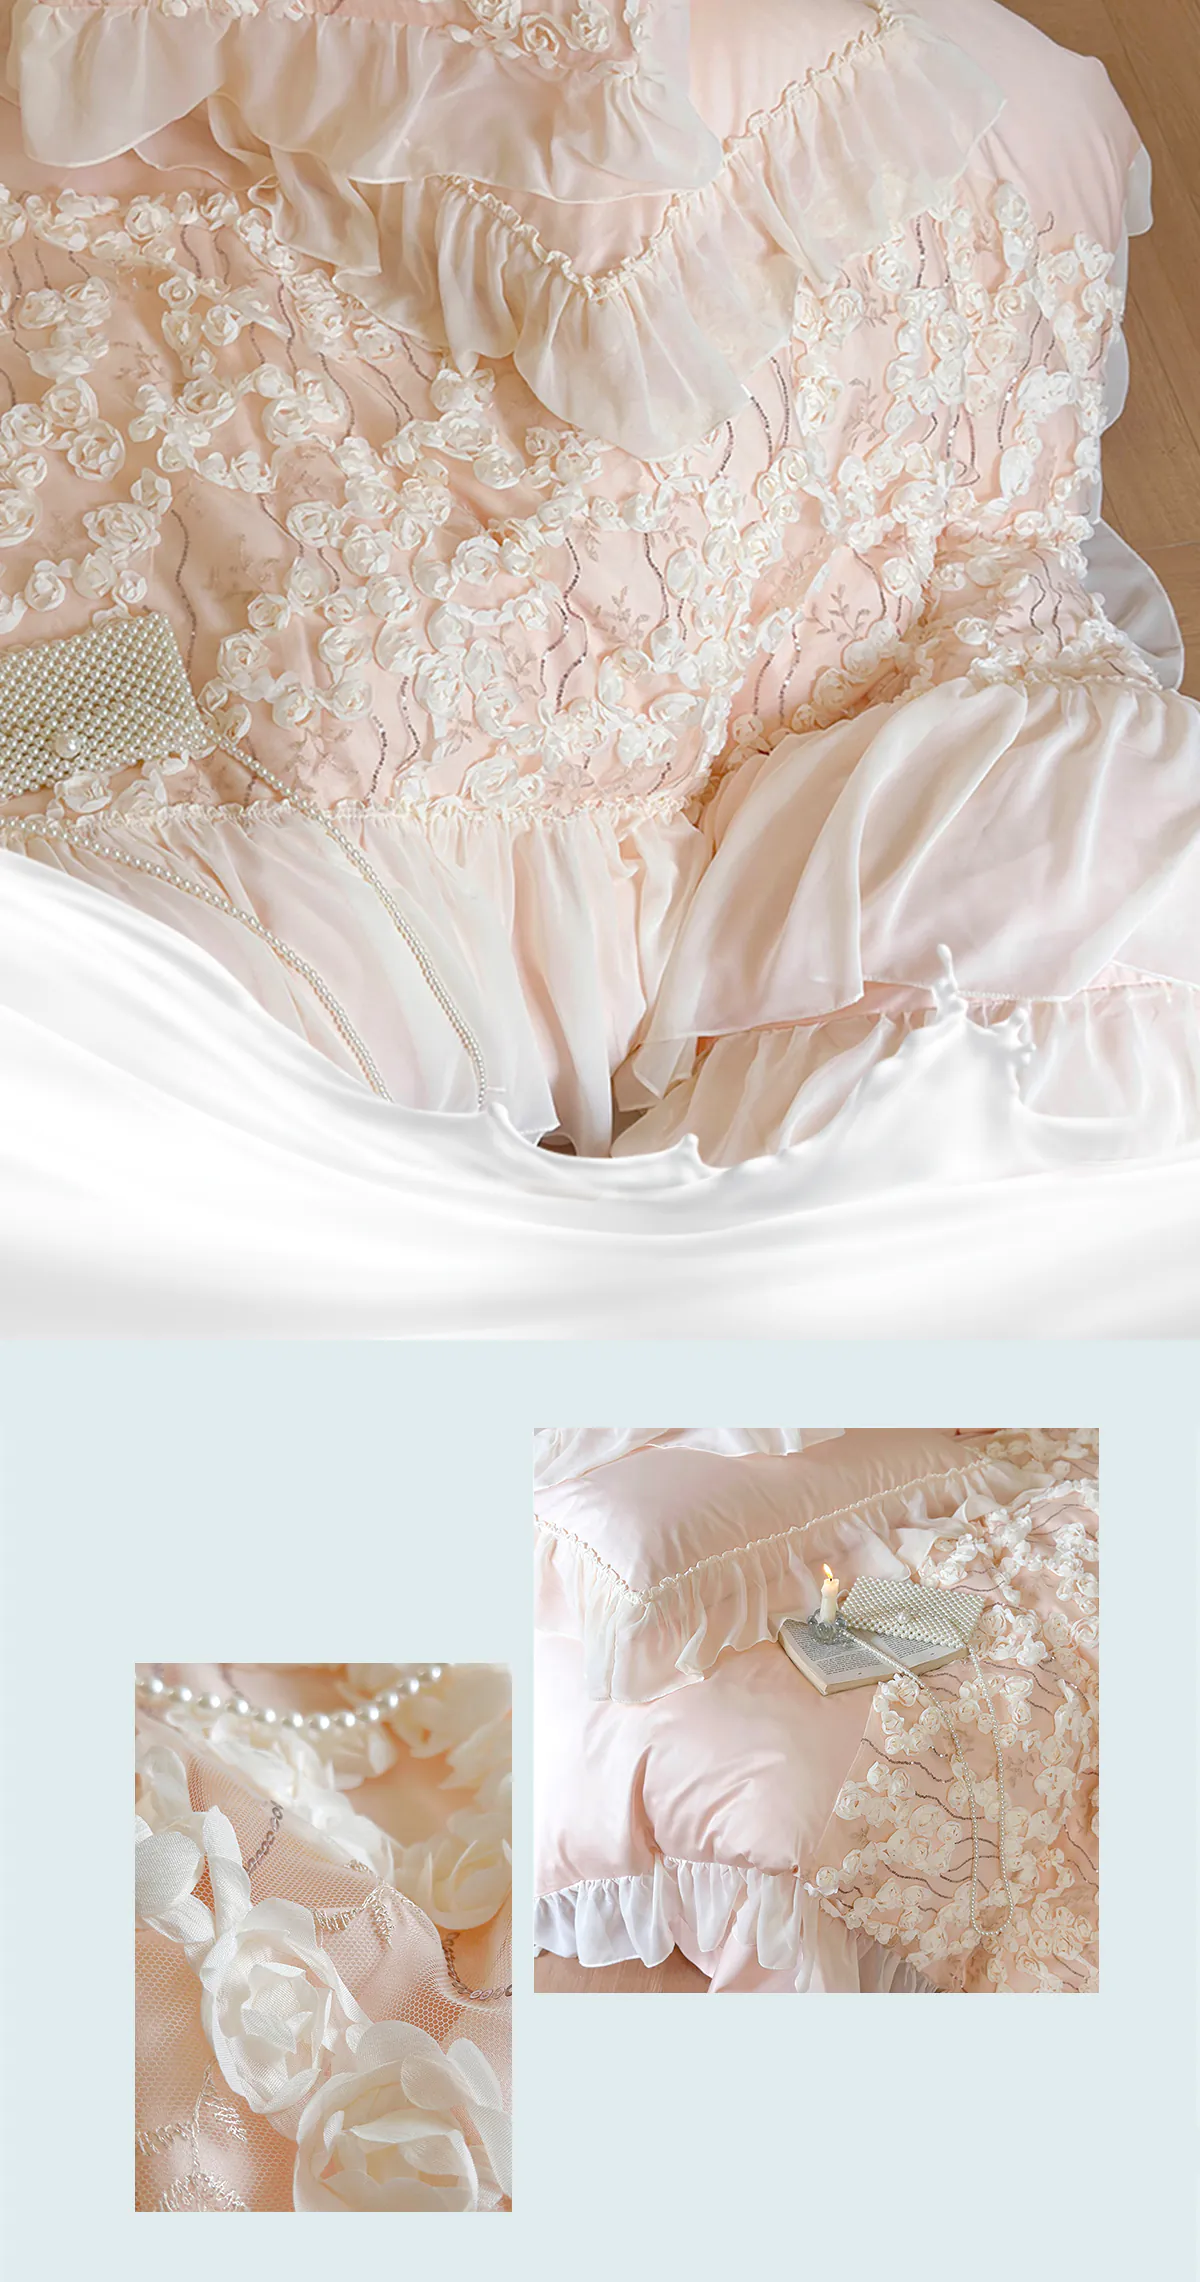 Aesthetic-140S-Long-Staple-Cotton-Chiffon-Lace-Floral-Bedding-Set17